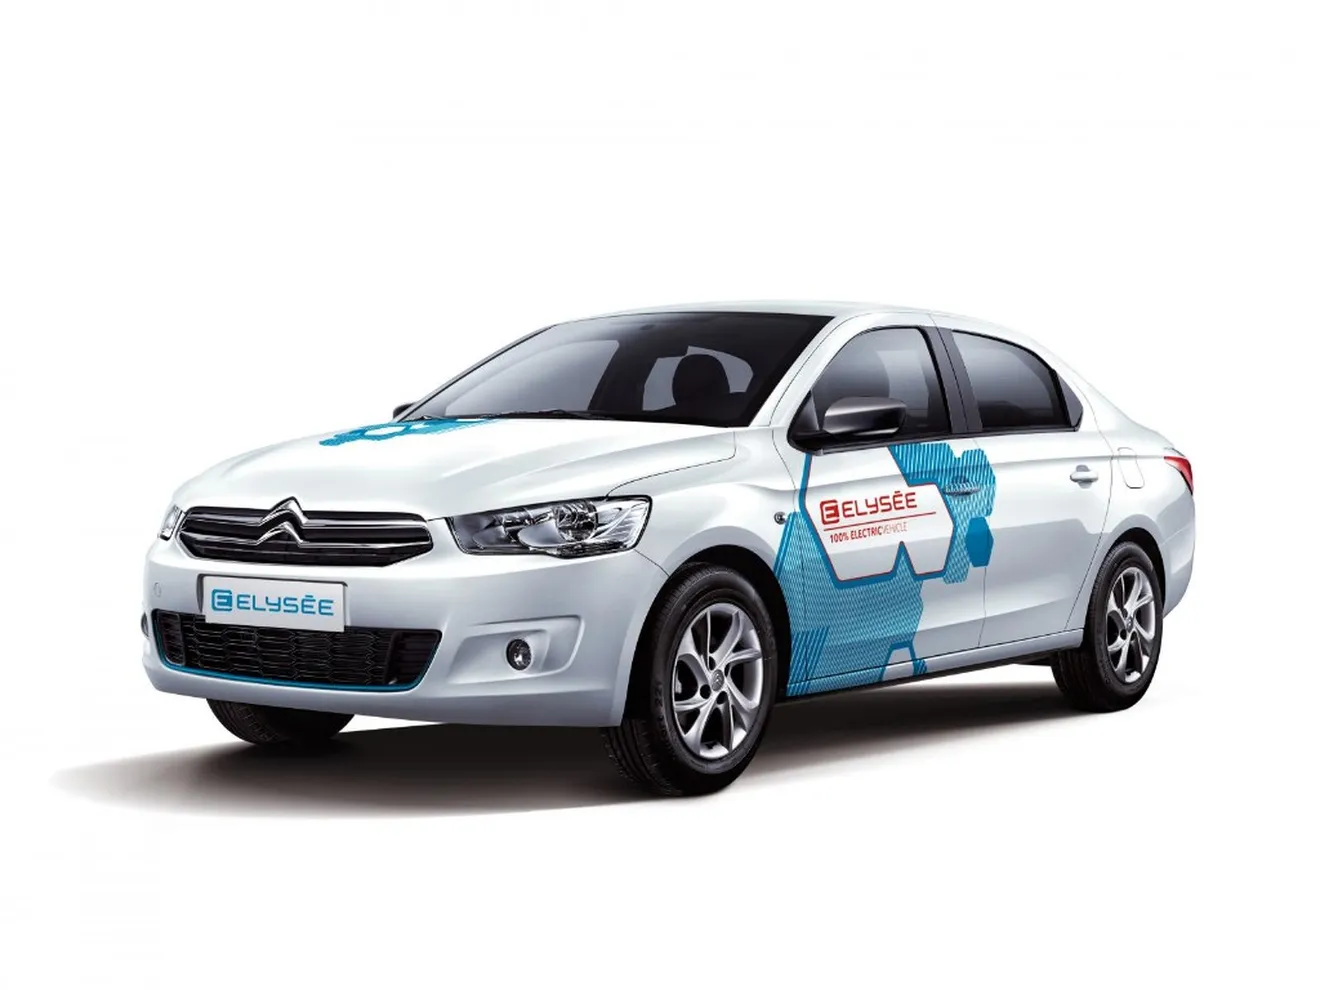 Citroën E-Elysee: el C-Elysee se convierte en coche eléctrico